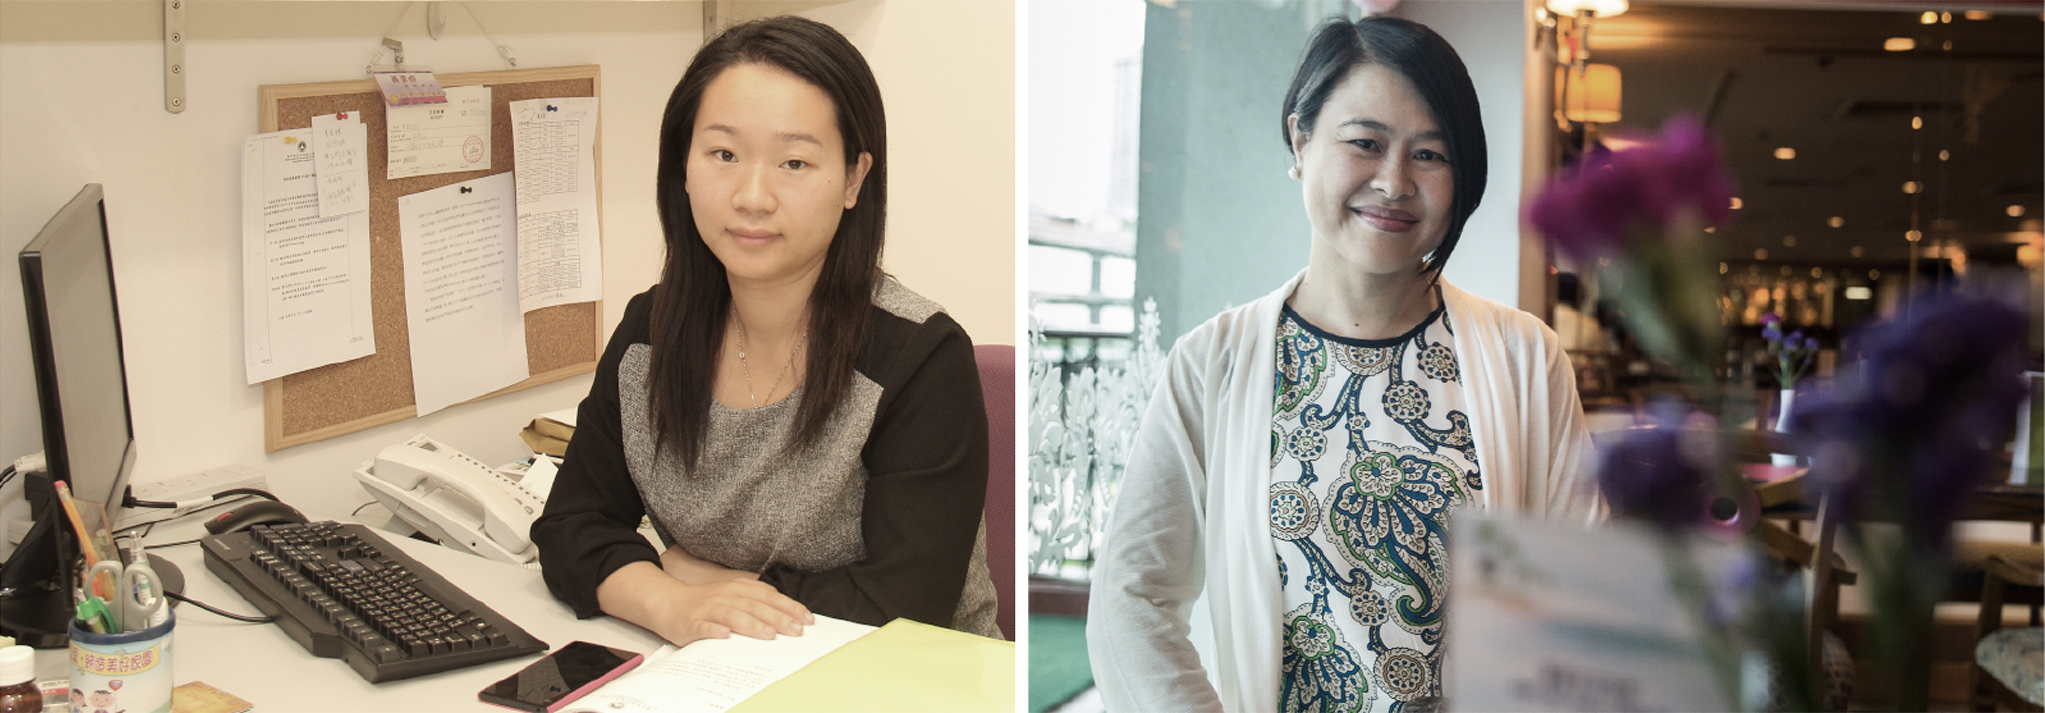 Política no feminino | Eleição de Wong Kit Cheng e Agnes Lam podem agitar as águas